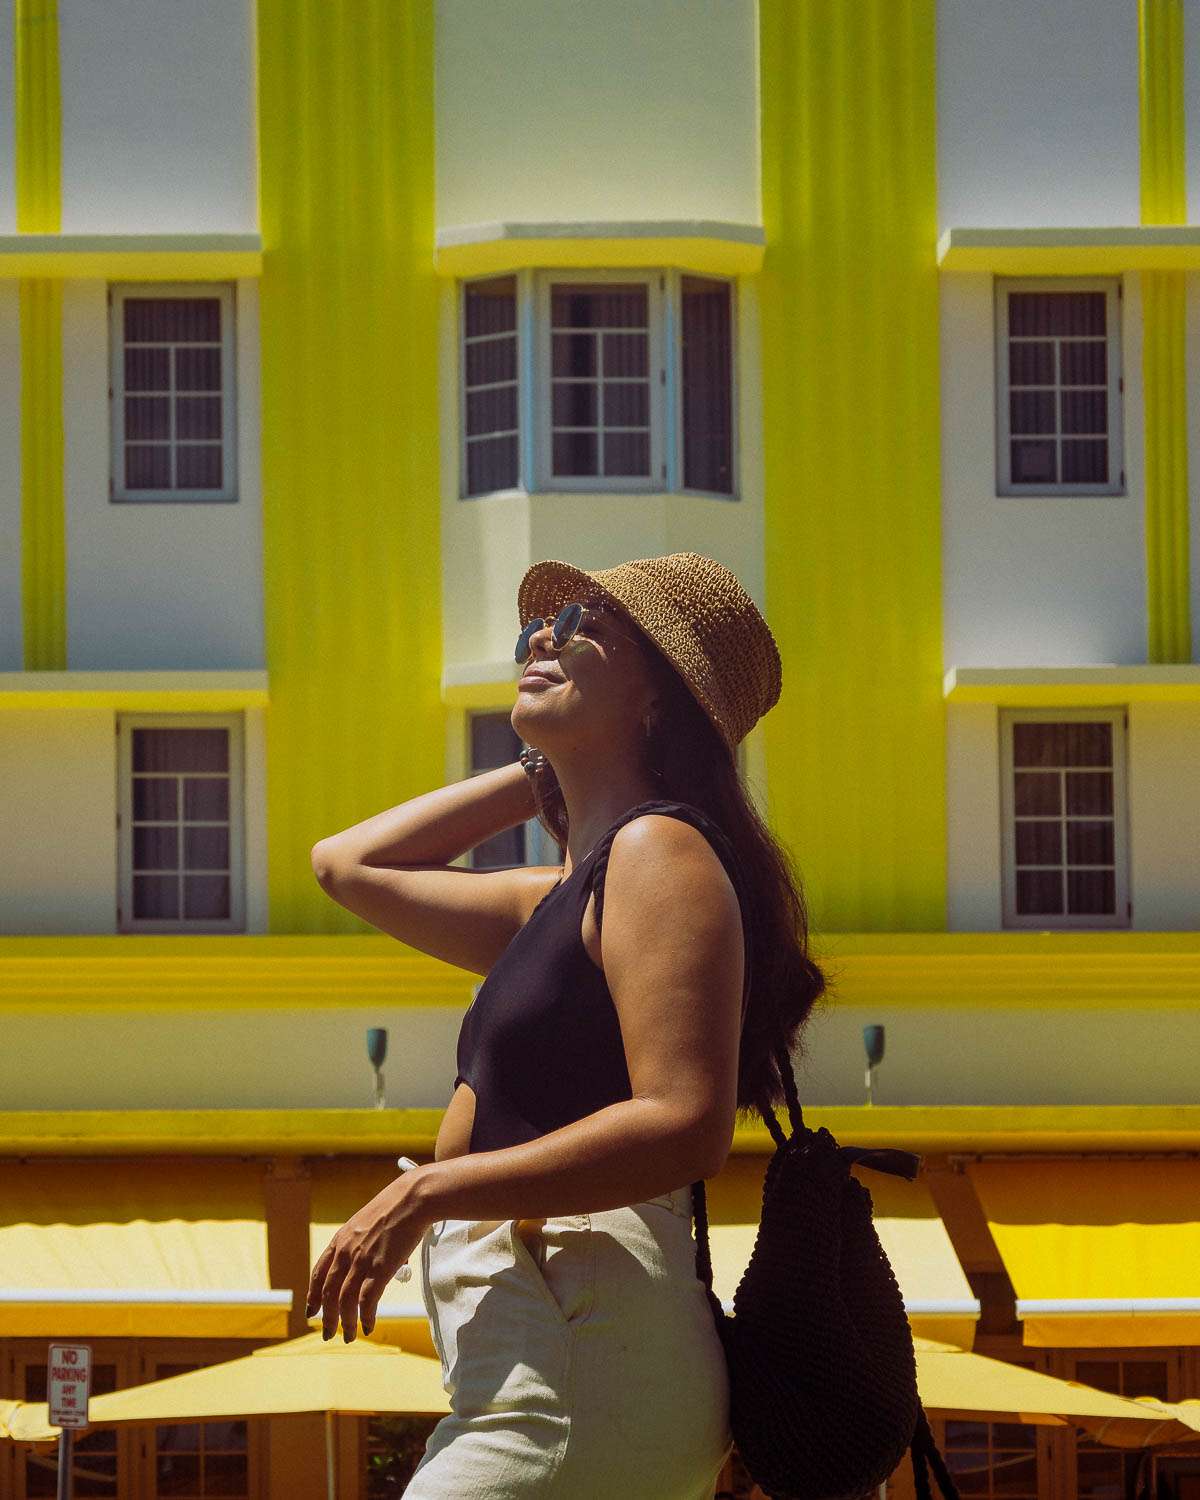 Rachel Off Duty: Woman Posing in Front of Yellow Art Deco Building